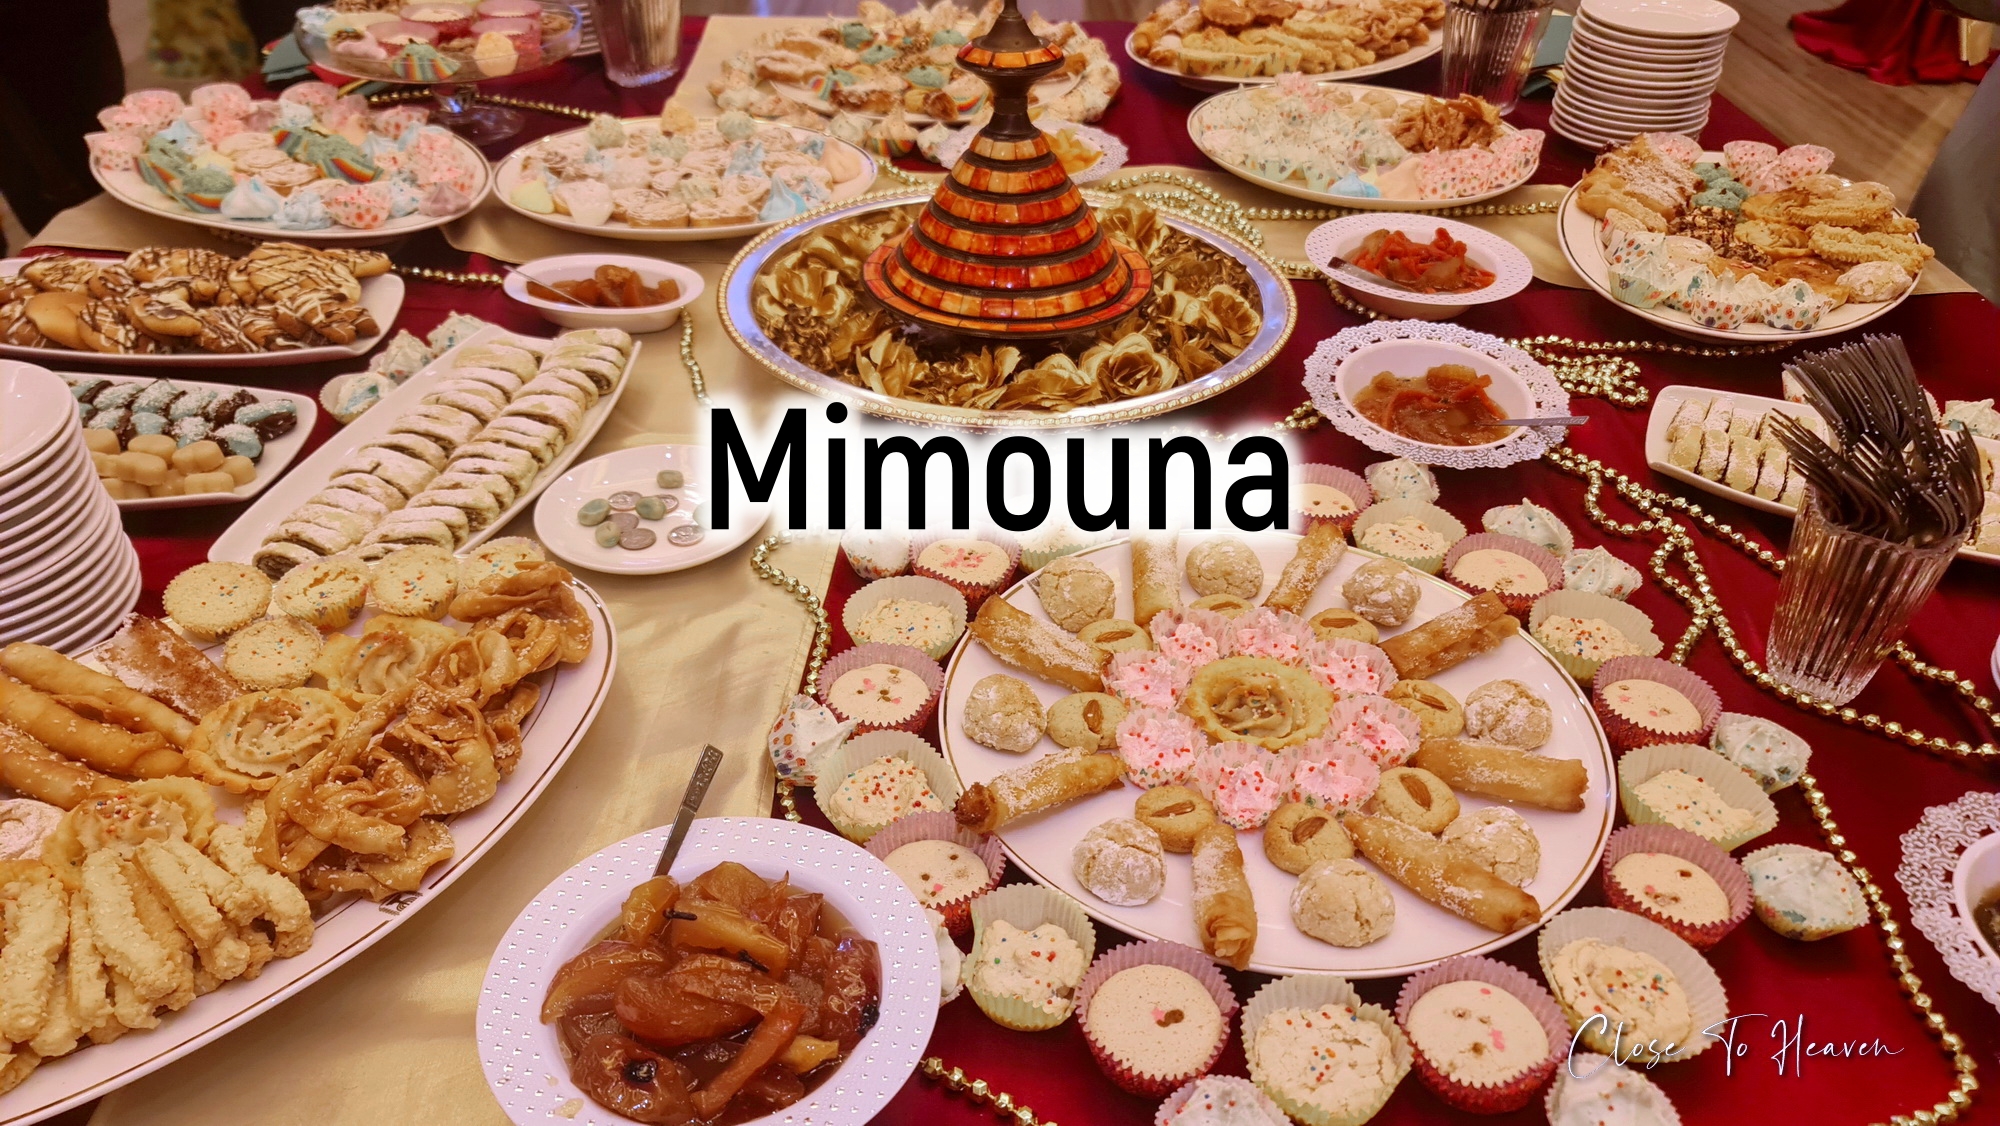 งานสังสรรค์ มิมูนา Mimouna | การจัดงานร่วมกันครั้งแรกระหว่าง สถานทูตอิสราเอล และ สถานทูตโมร็อกโก